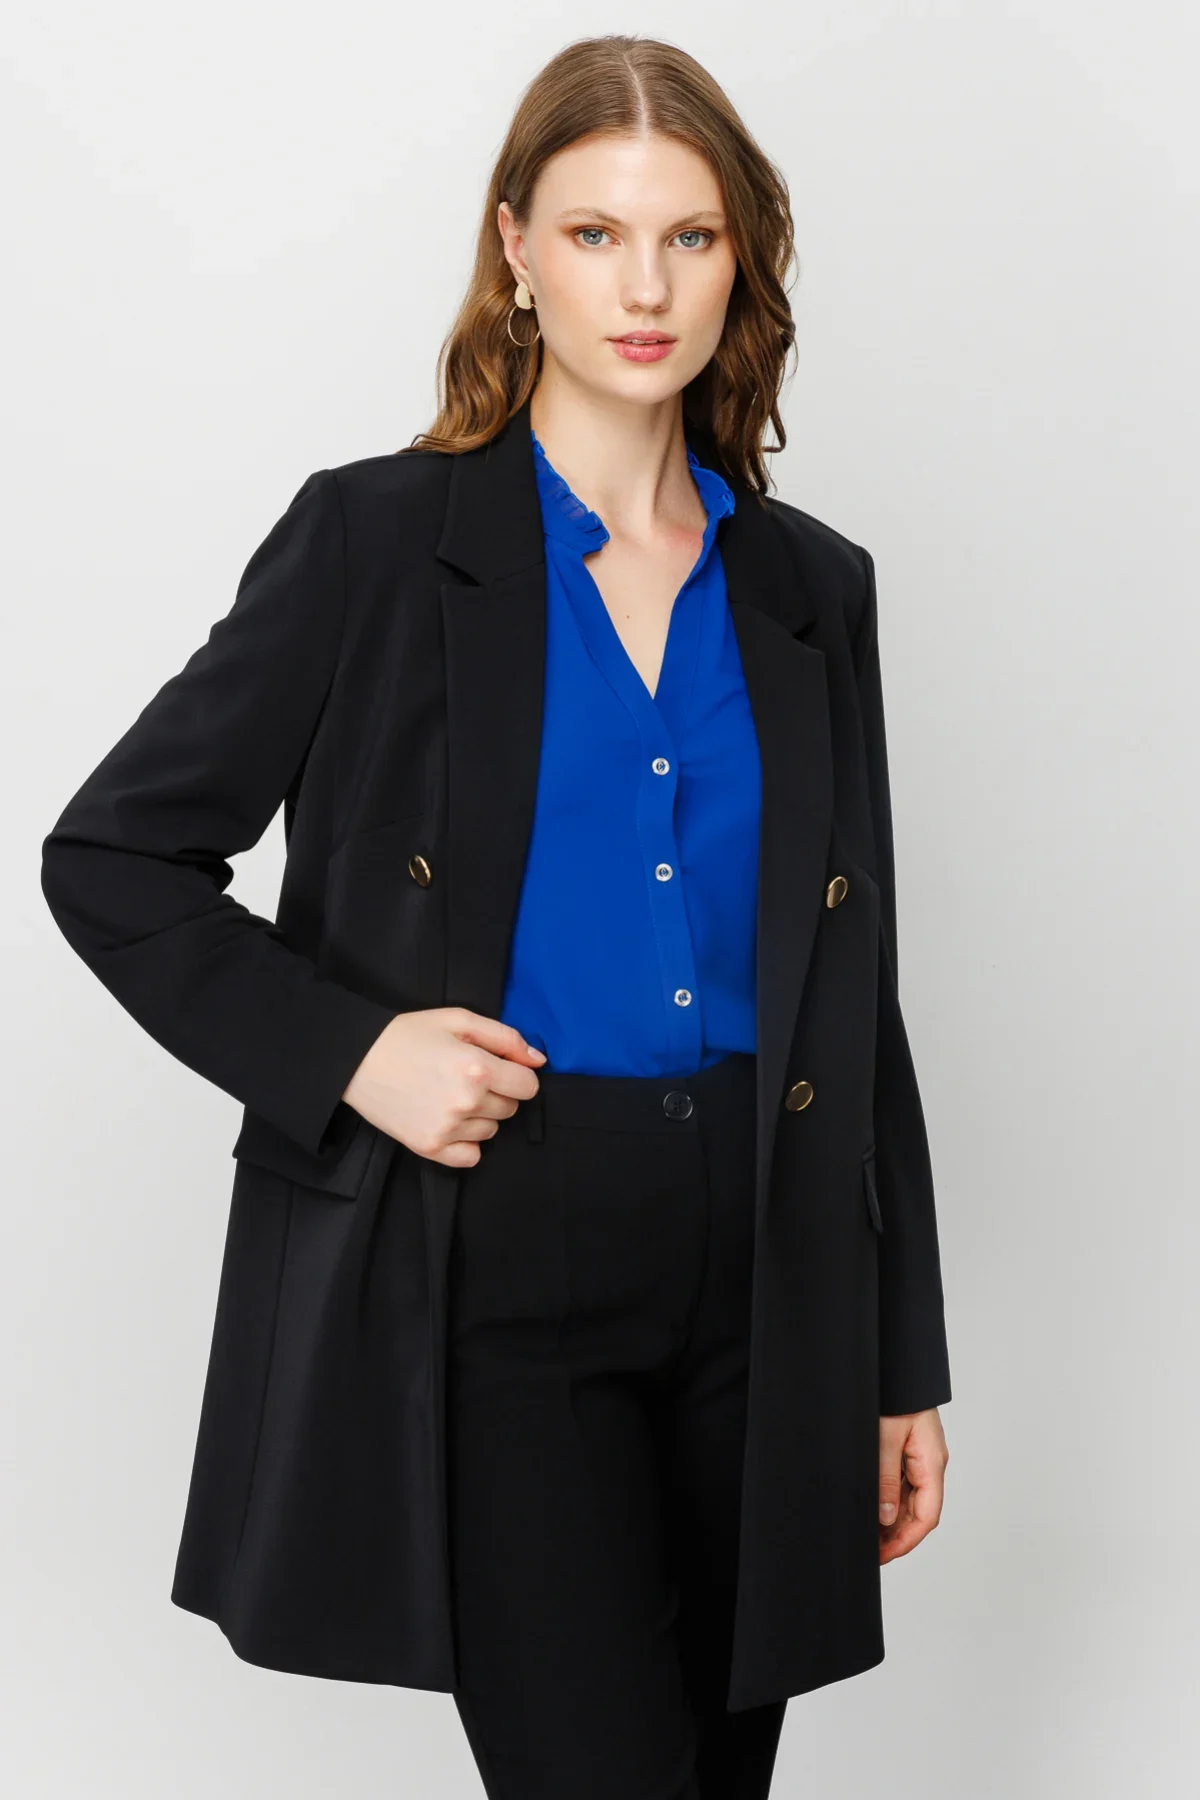 Kadın Uzun Blazer Ceket - Siyah - 2